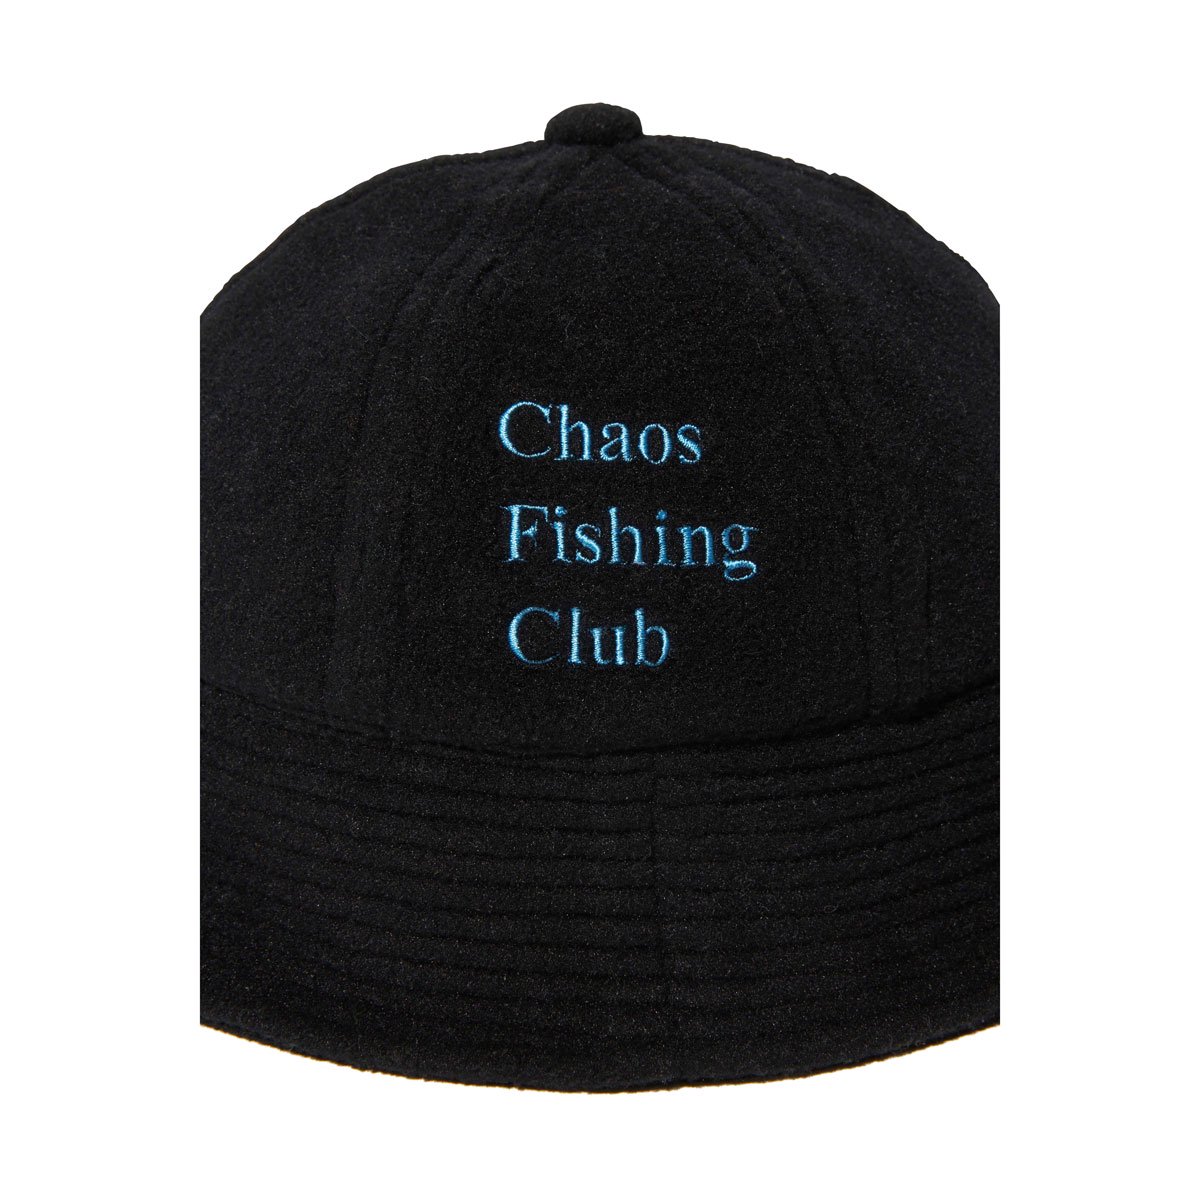 Chaos Fishing Club - LOGO FLEECE HAT - SHRED